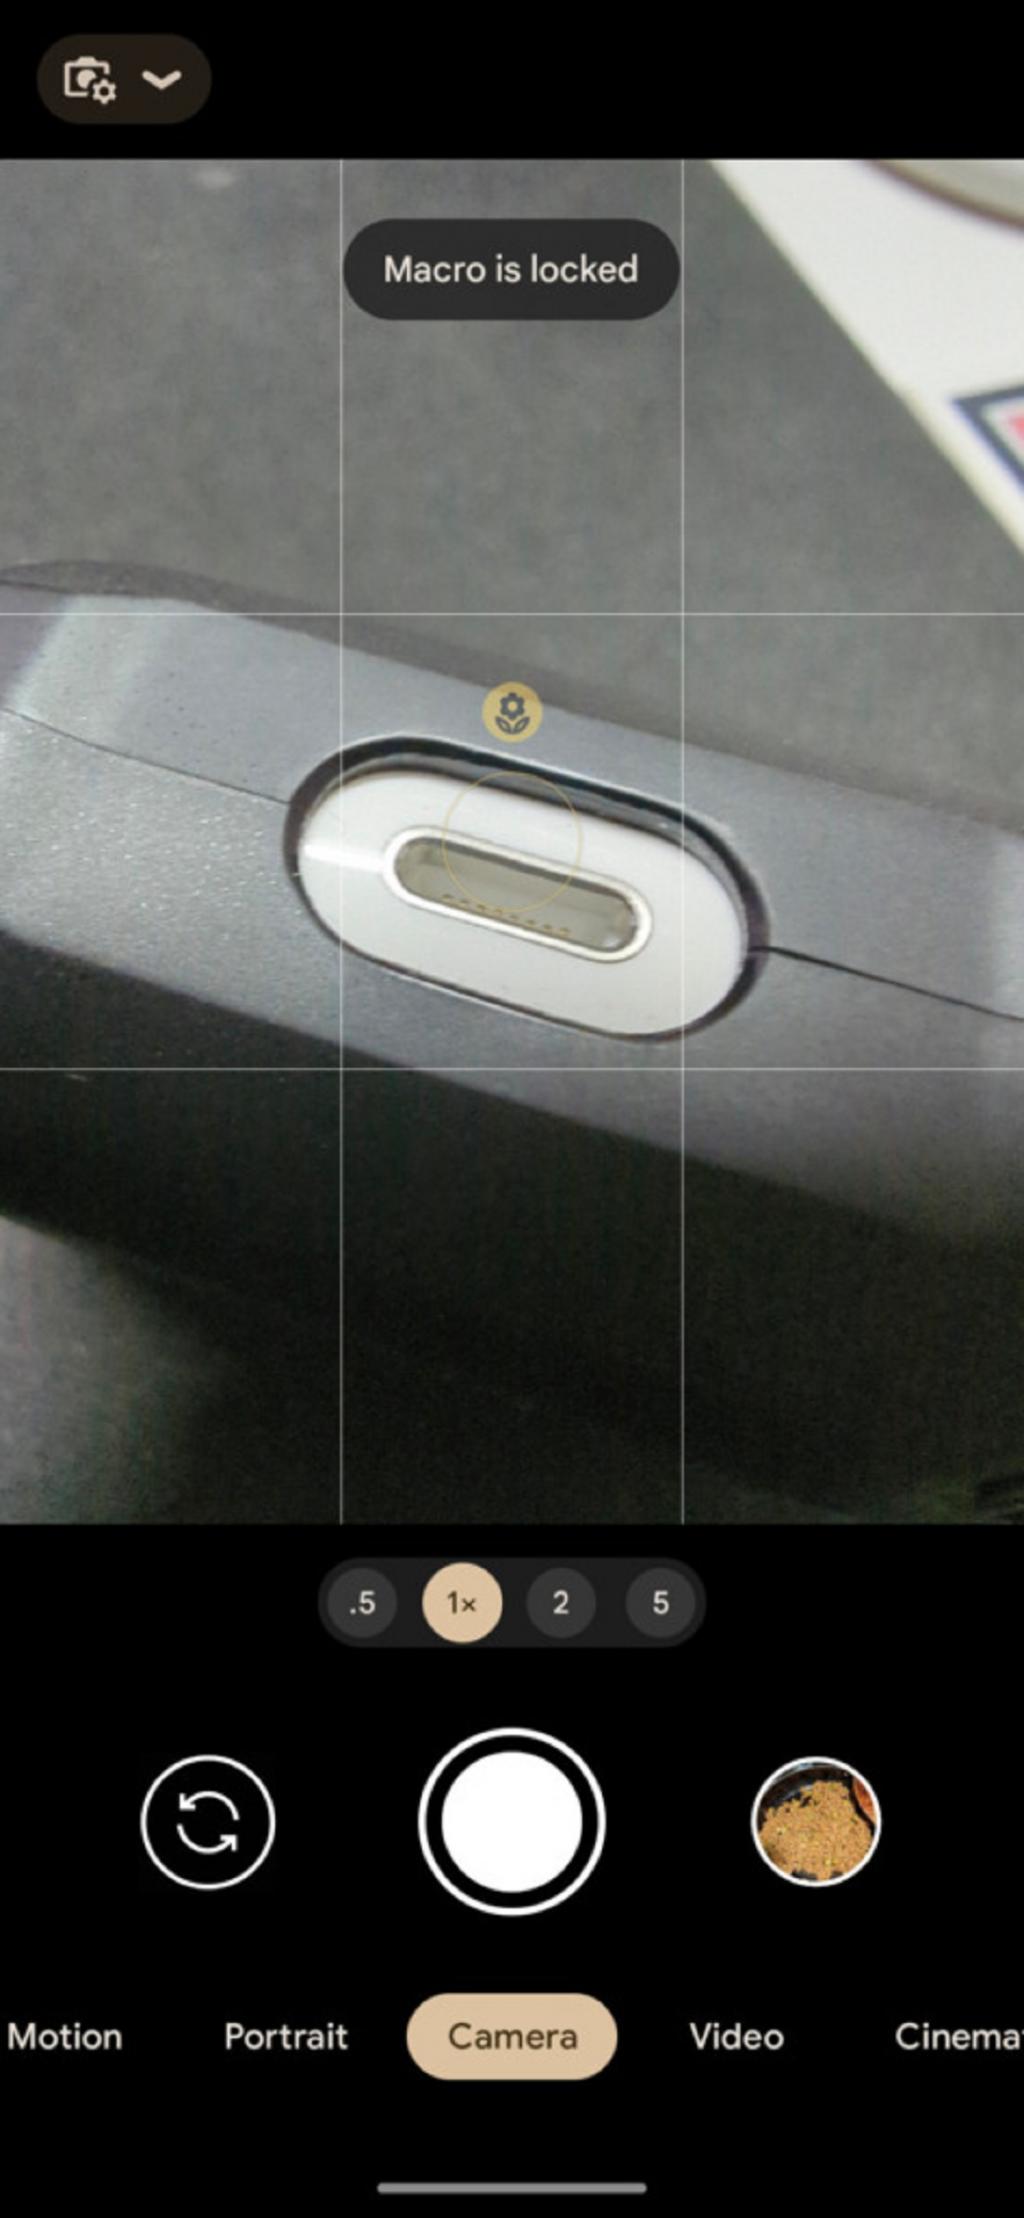 فعال کردن قابلیت حالت ماکرو یا Macro Mode دوربین گوشی پیکسل3